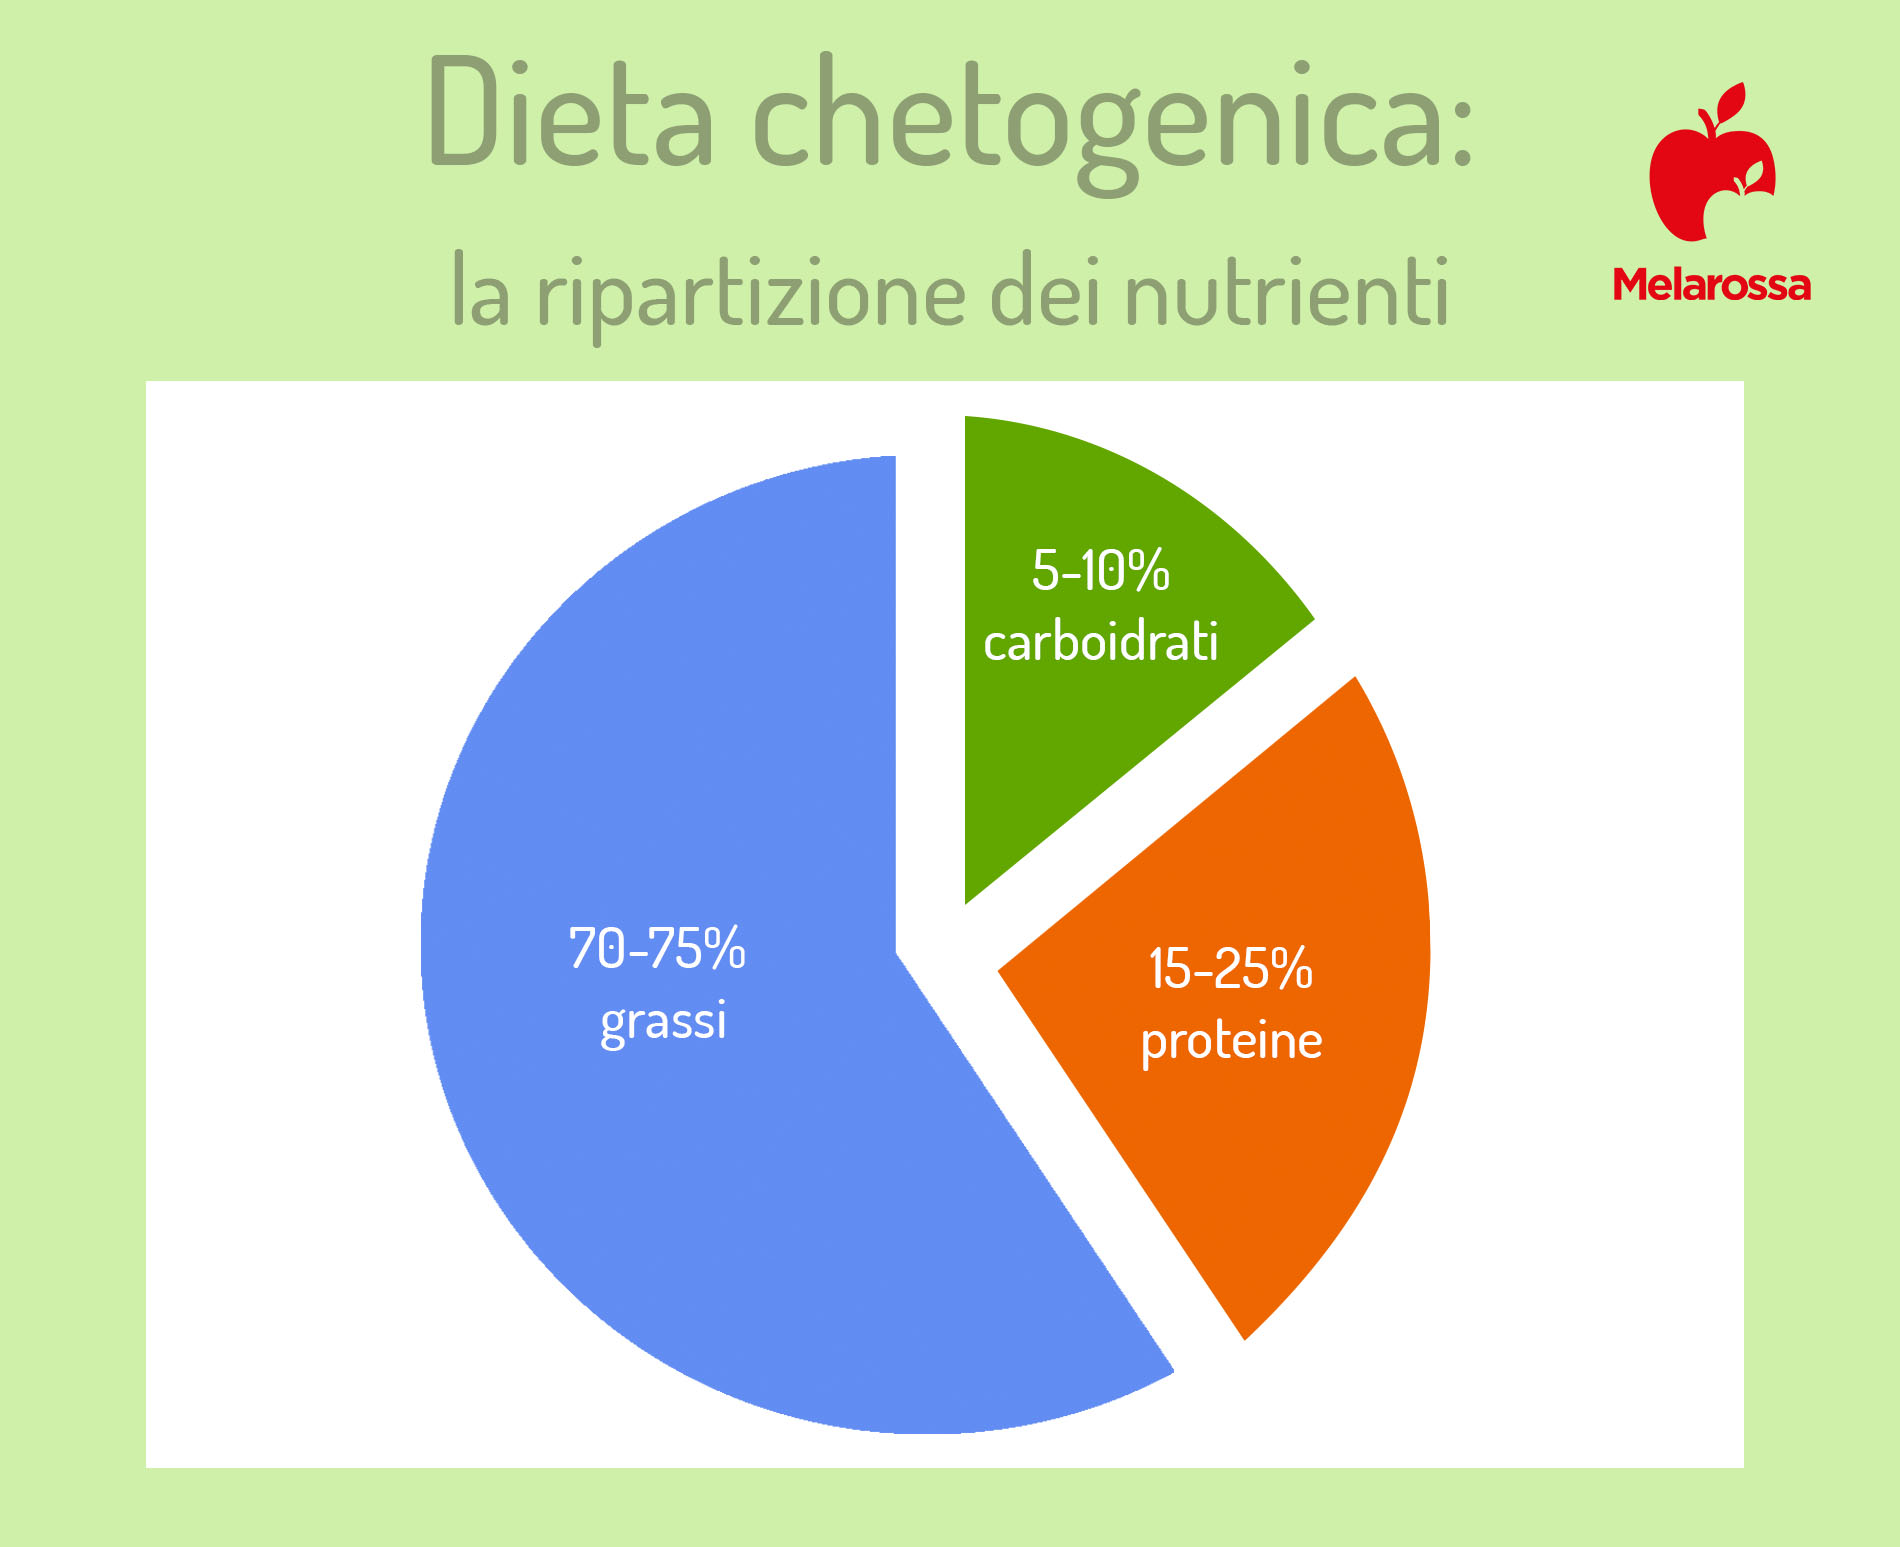 dieta chetogenica: ripartizione  dei nutrienti 